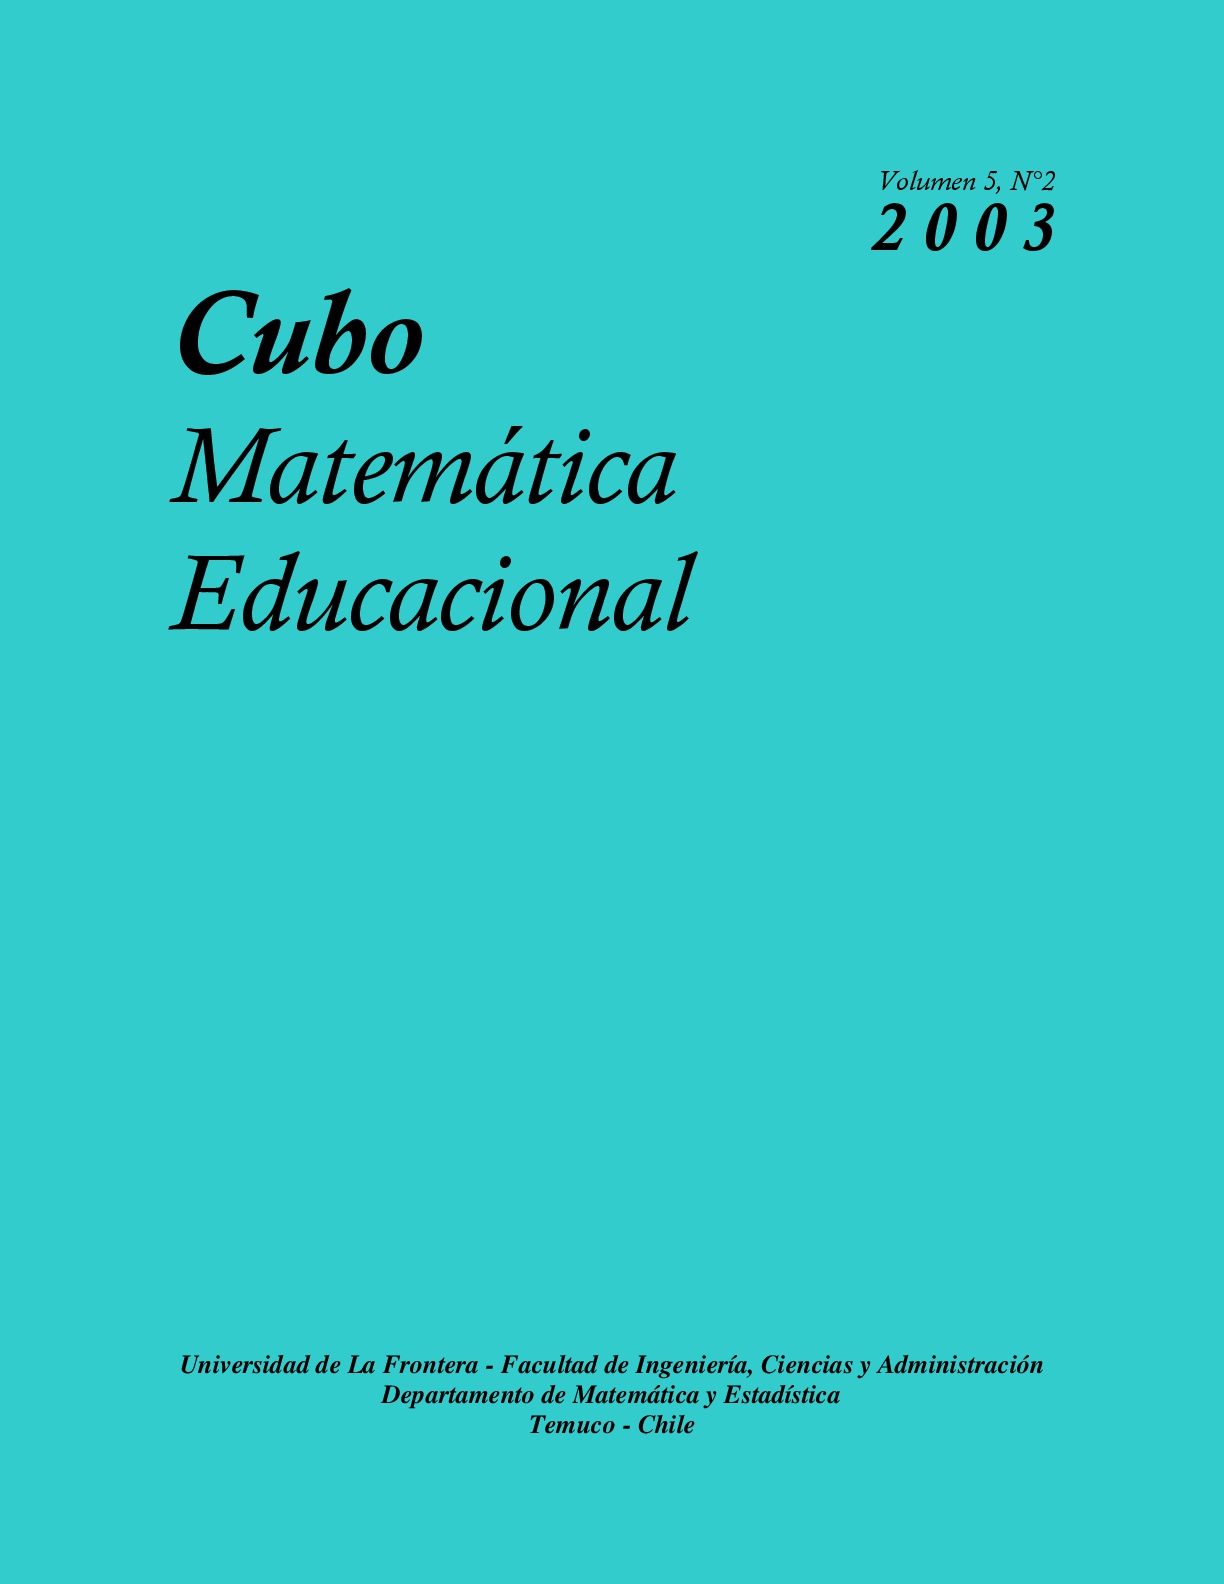 					View Vol. 5 No. 2 (2003): CUBO, Matemática Educacional
				